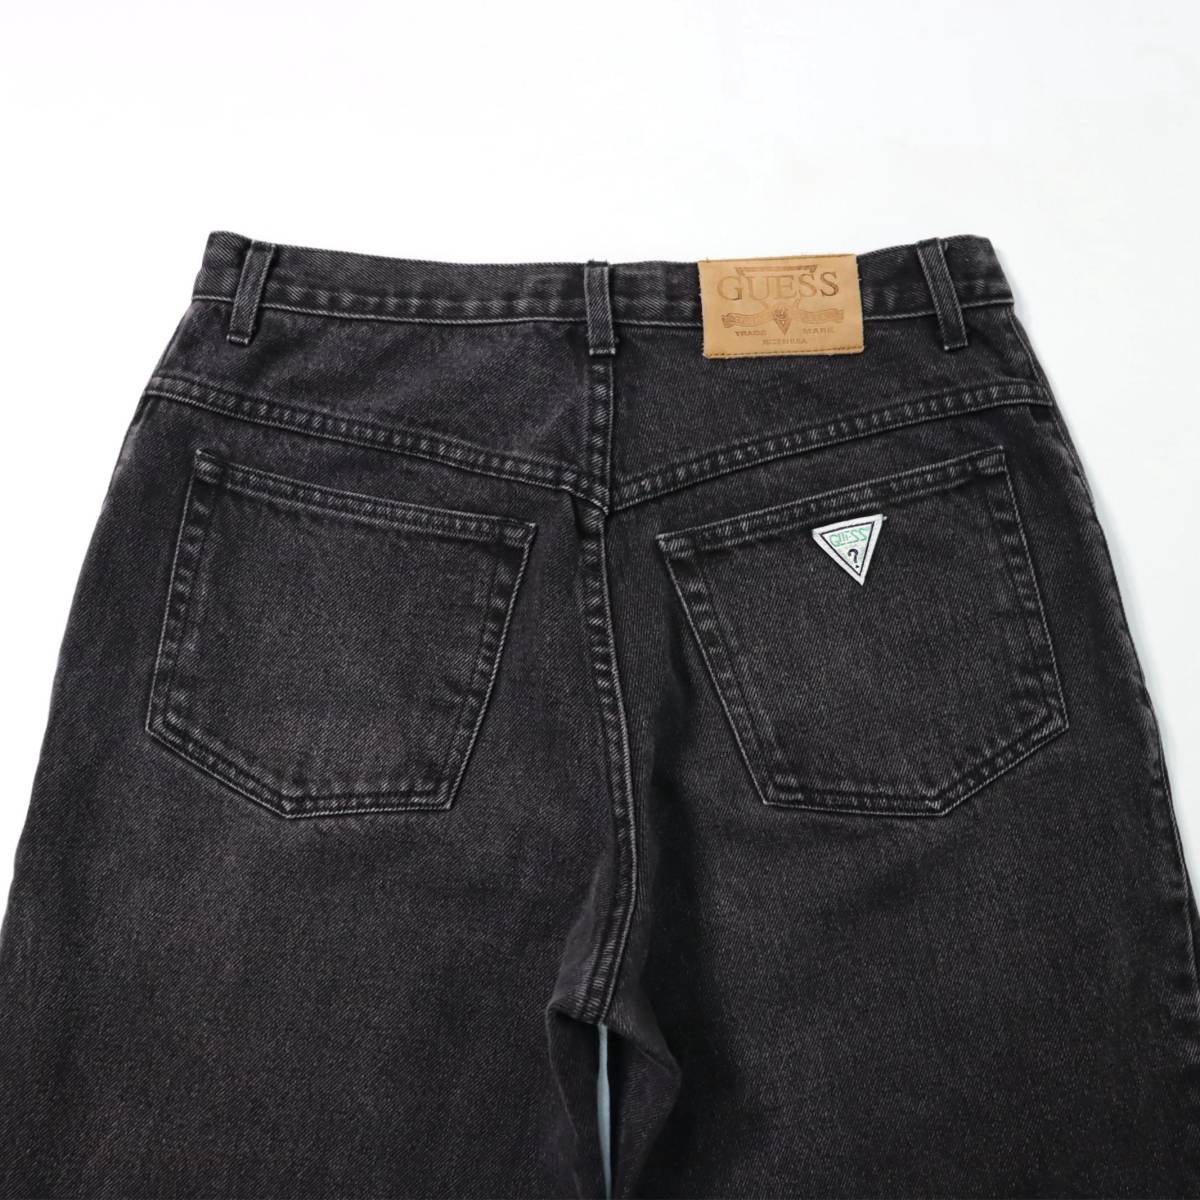 [ полный размер 32/29] 90s Guess Buggy Denim брюки USA производства черный джинсы Guess Roo znebada Vintage vintage